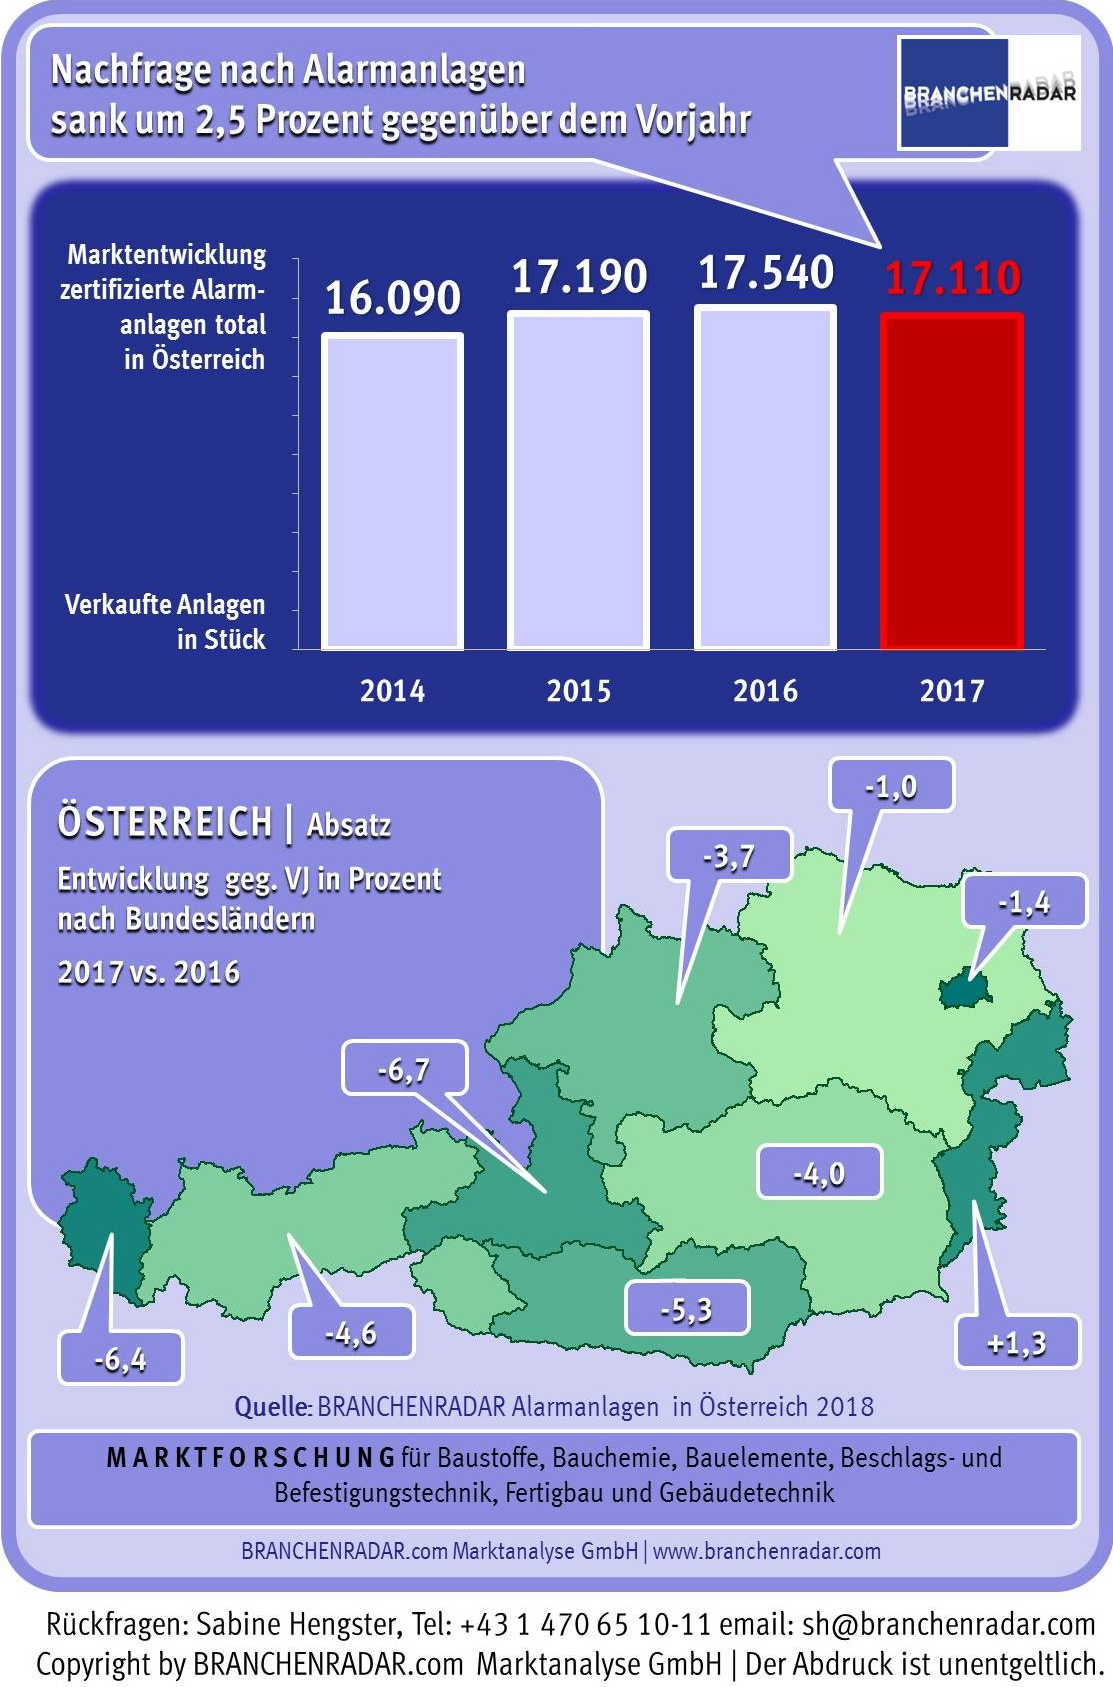 Mit insgesamt rund 17.110 Stück wurden im vergangenen Jahr um 2,5 Prozent weniger zertifizierte Alarmanlagen verkauft als im Jahr davor. Der Rückgang zog sich dabei durch nahezu alle Bundesländer und war in Kärnten, Salzburg und Vorarlberg mit mehr als fünf Prozent gegenüber Vorjahr besonders stark. Selbst in Wien und Niederösterreich wurden 2017 um rund ein Prozent weniger zertifizierte Alarmanlagen montiert als im Jahr 2016. Nur im Burgenland gab es nochmals ein moderates Absatzplus von 1,3 Prozent gegenüber Vorjahr.